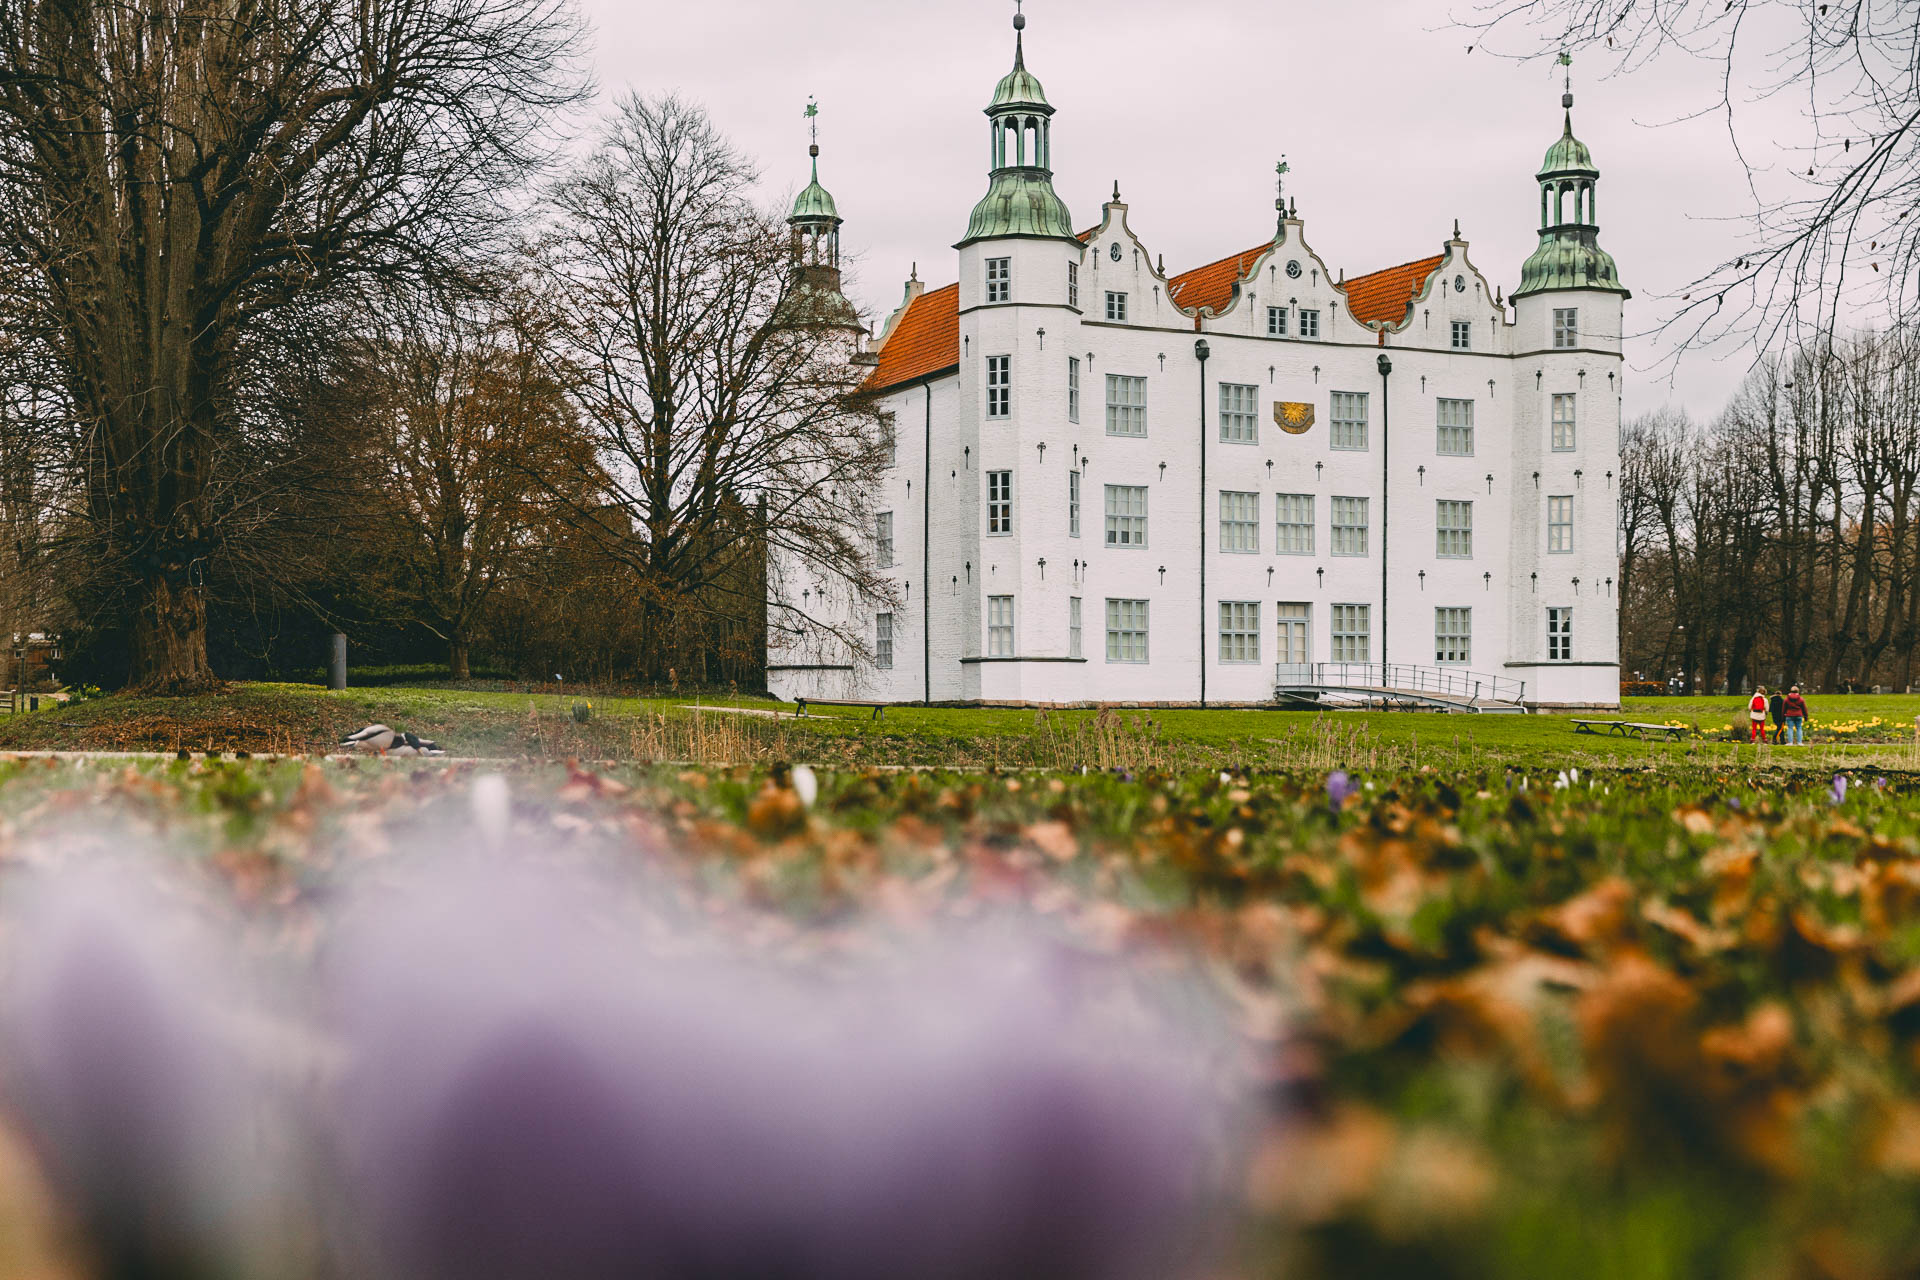 Schloss Ahrensburg als Tipp für einen gelungenen Tagesausflug nach Ahrensburg